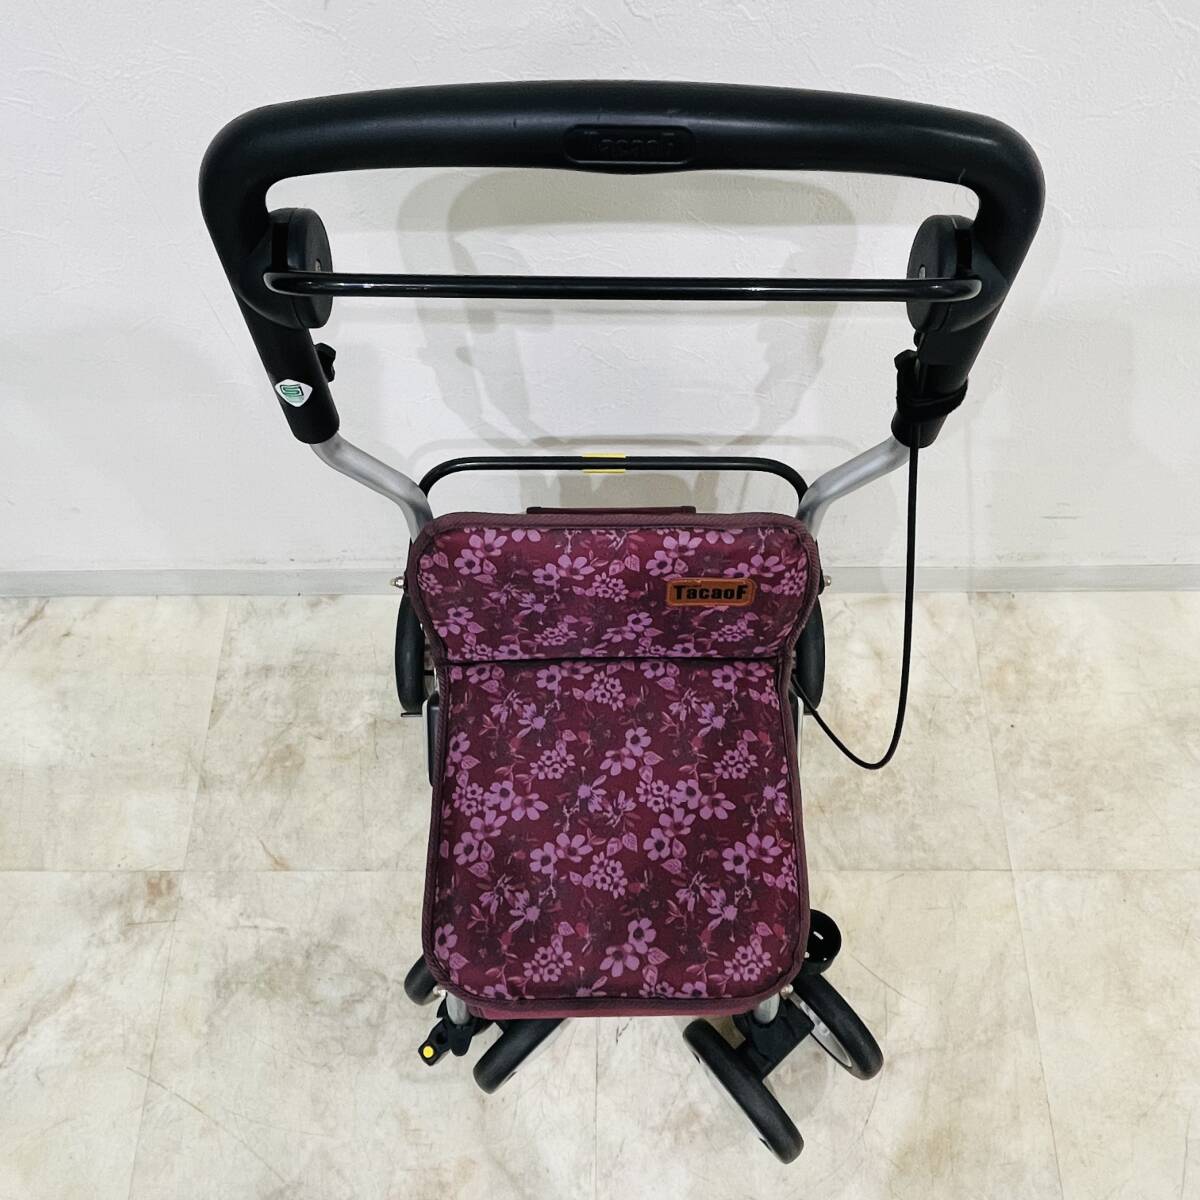 QA1917 рабочий товар Tey kob коляска для пожилых складной коляская для ходьбы ручная тележка товары для ухода красный фиолетовый цвет легкий Tacaof осмотр K